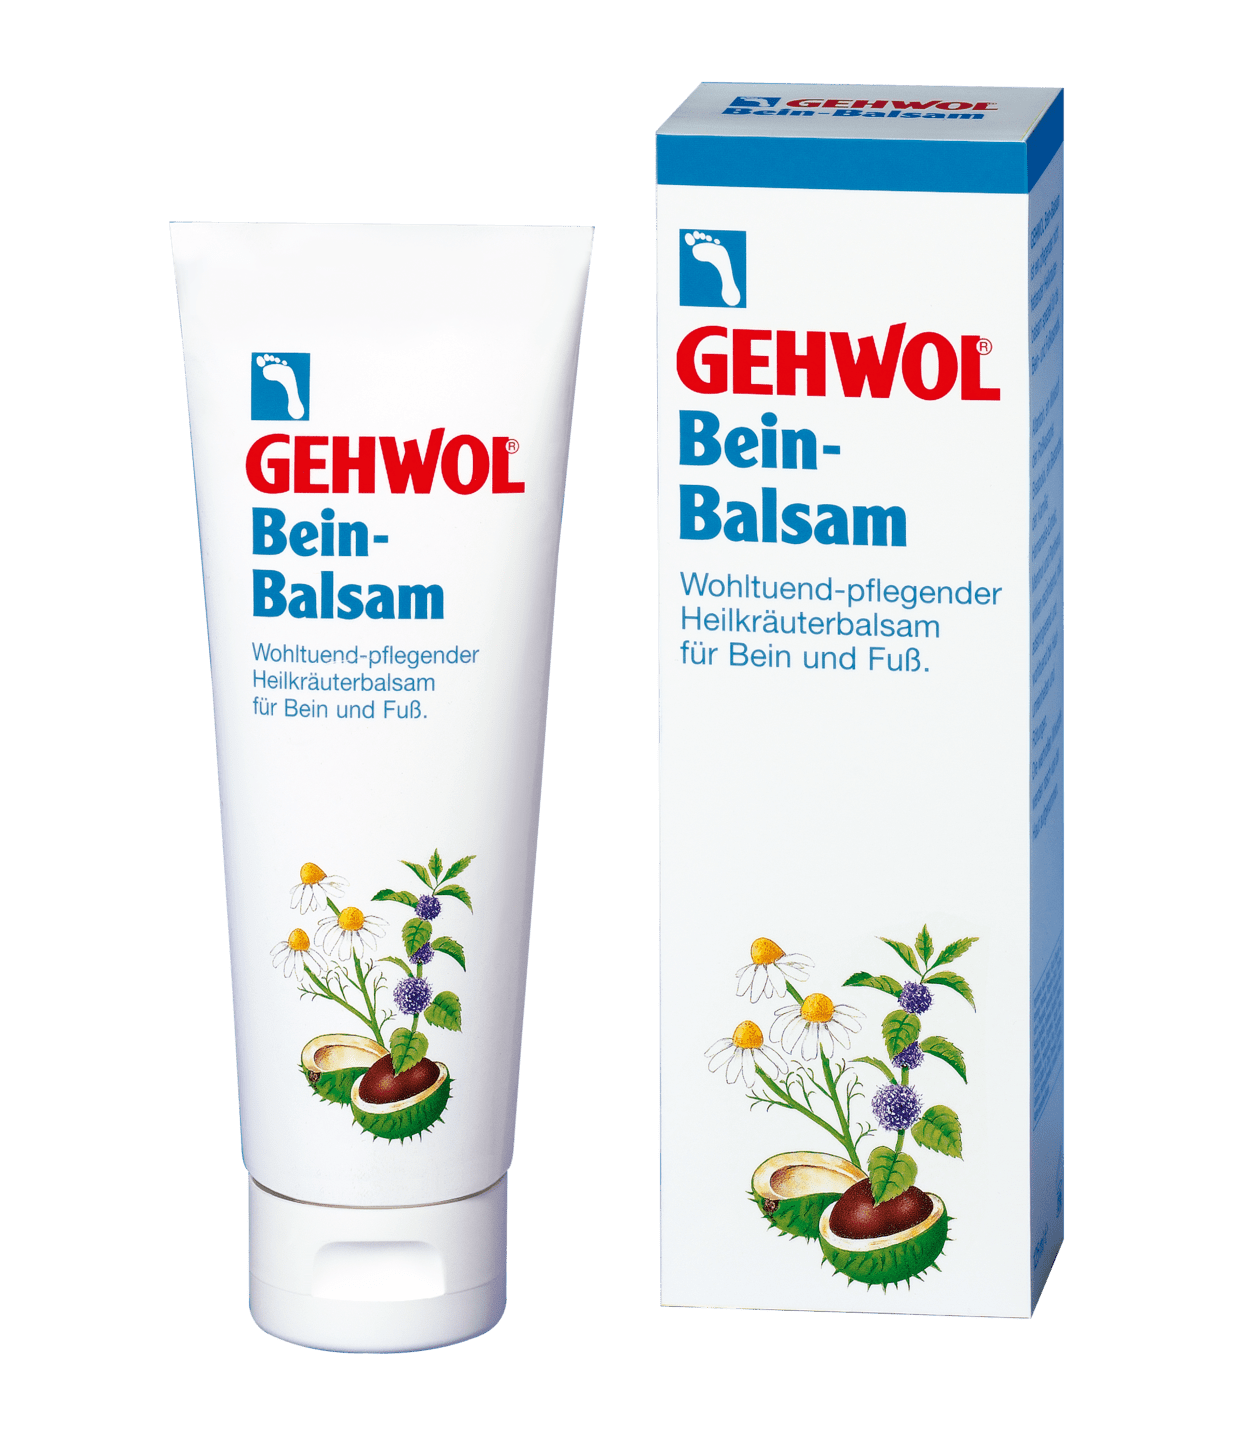 GEHWOL - Bein-Balsam, 125 ml